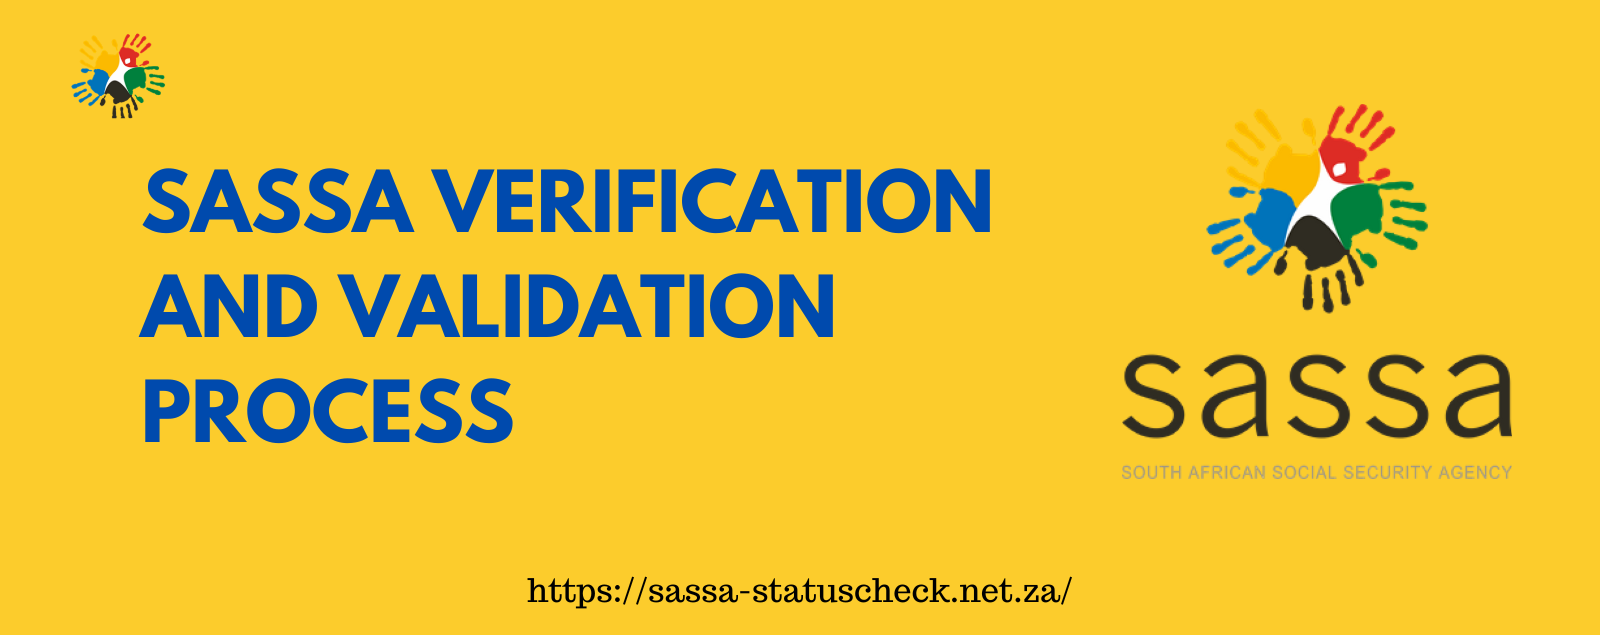 SASSA Verification and Validation Process